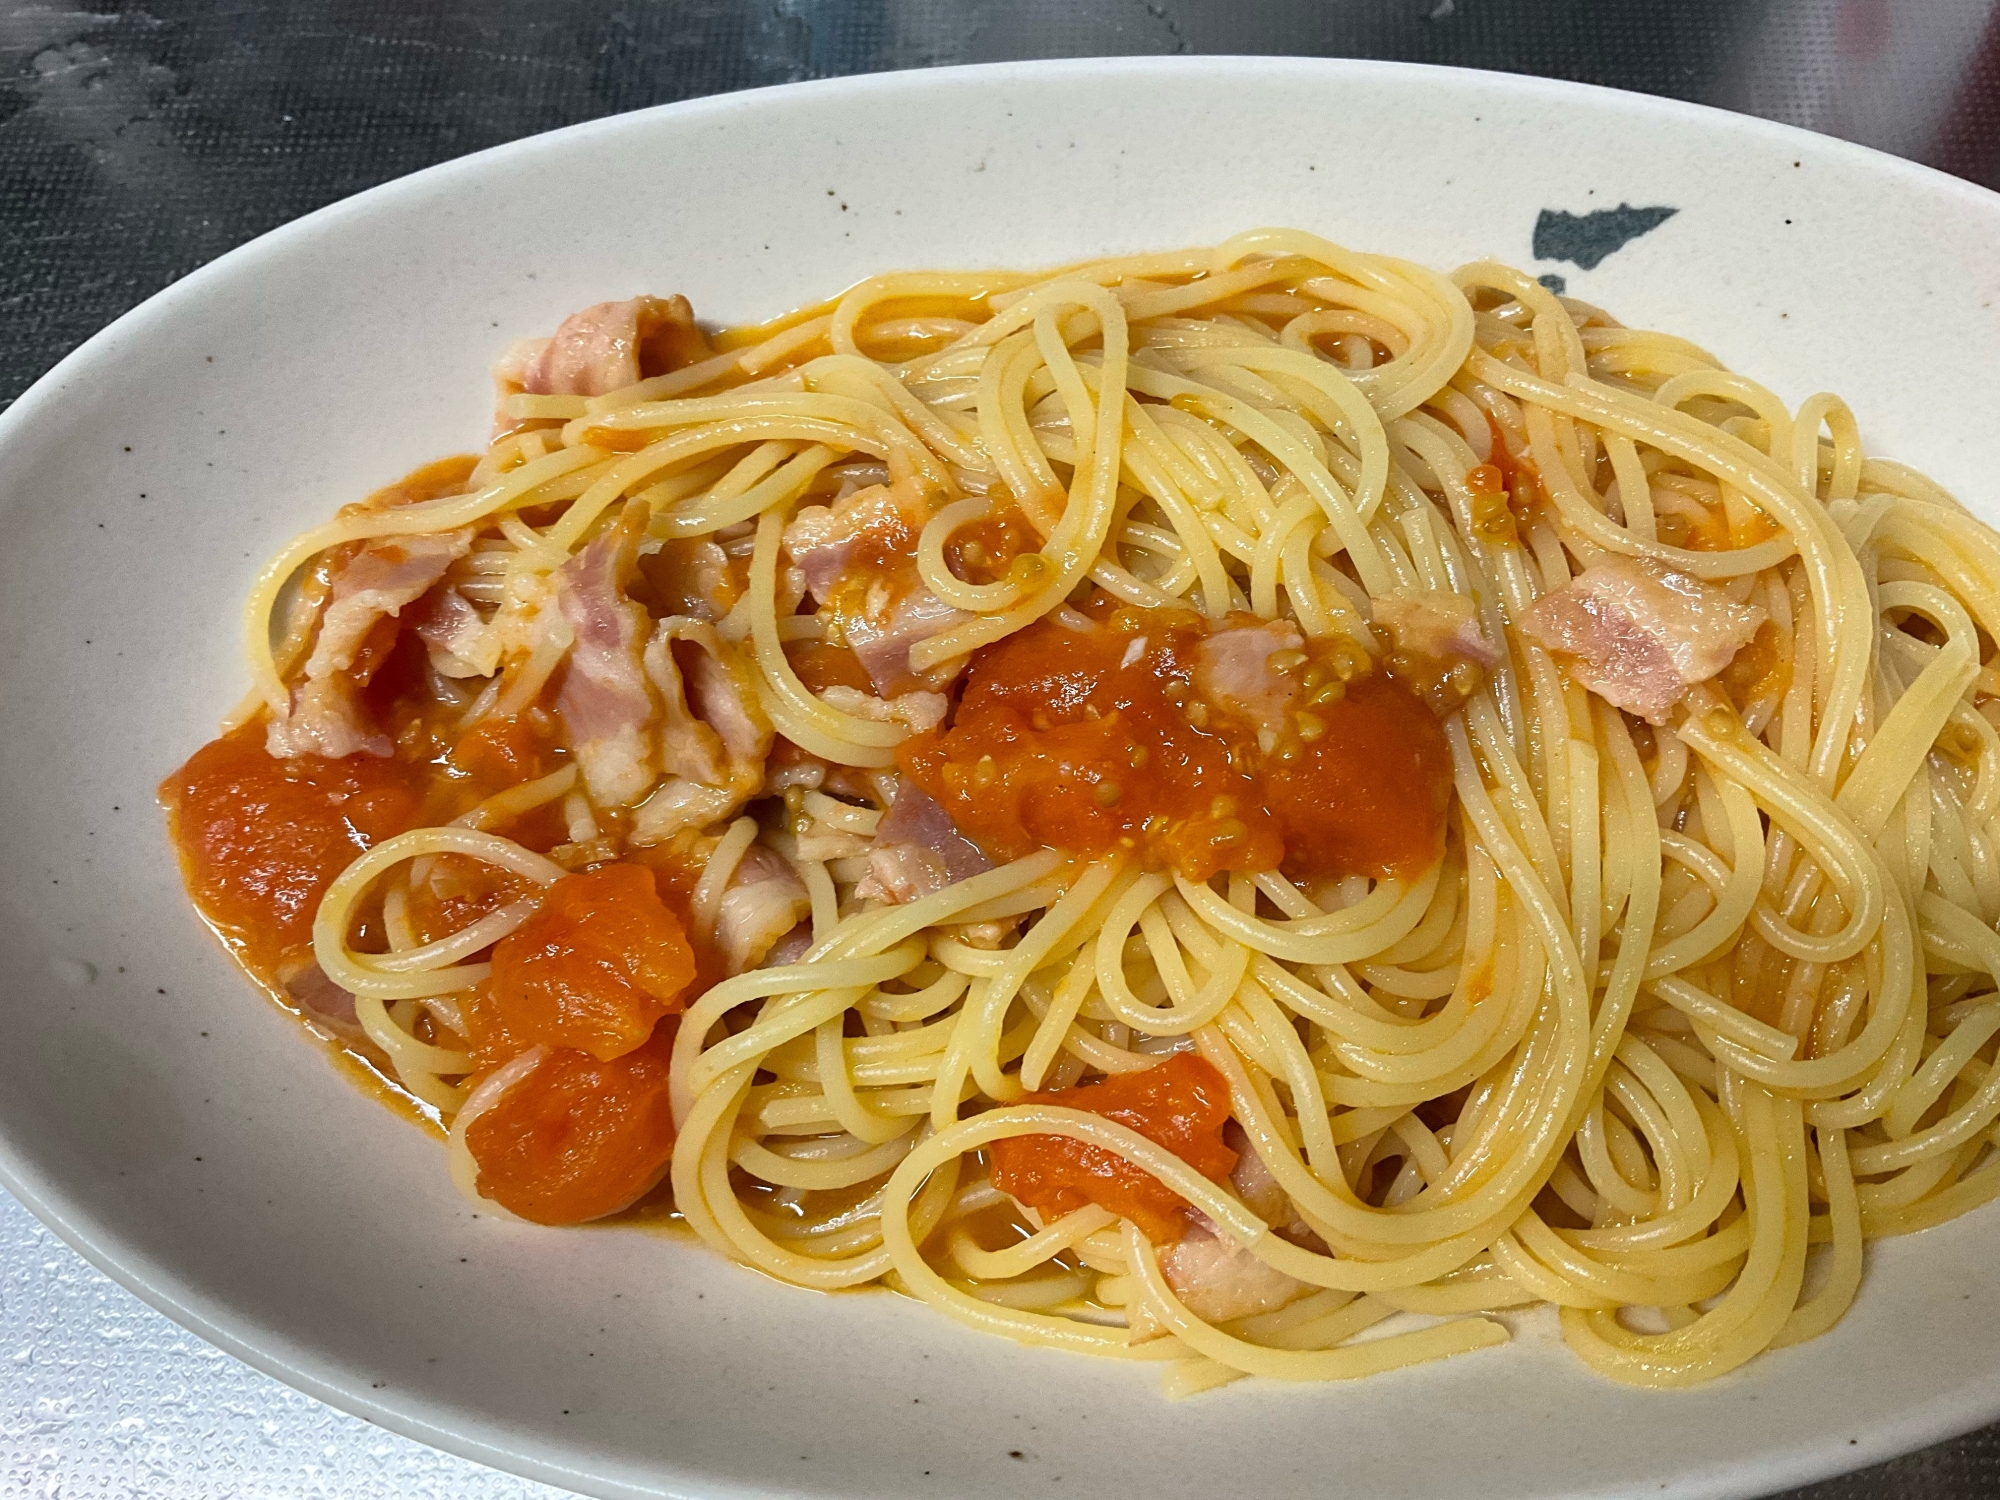 シシリアンルージュ(トマト)とベーコンのスパゲティ